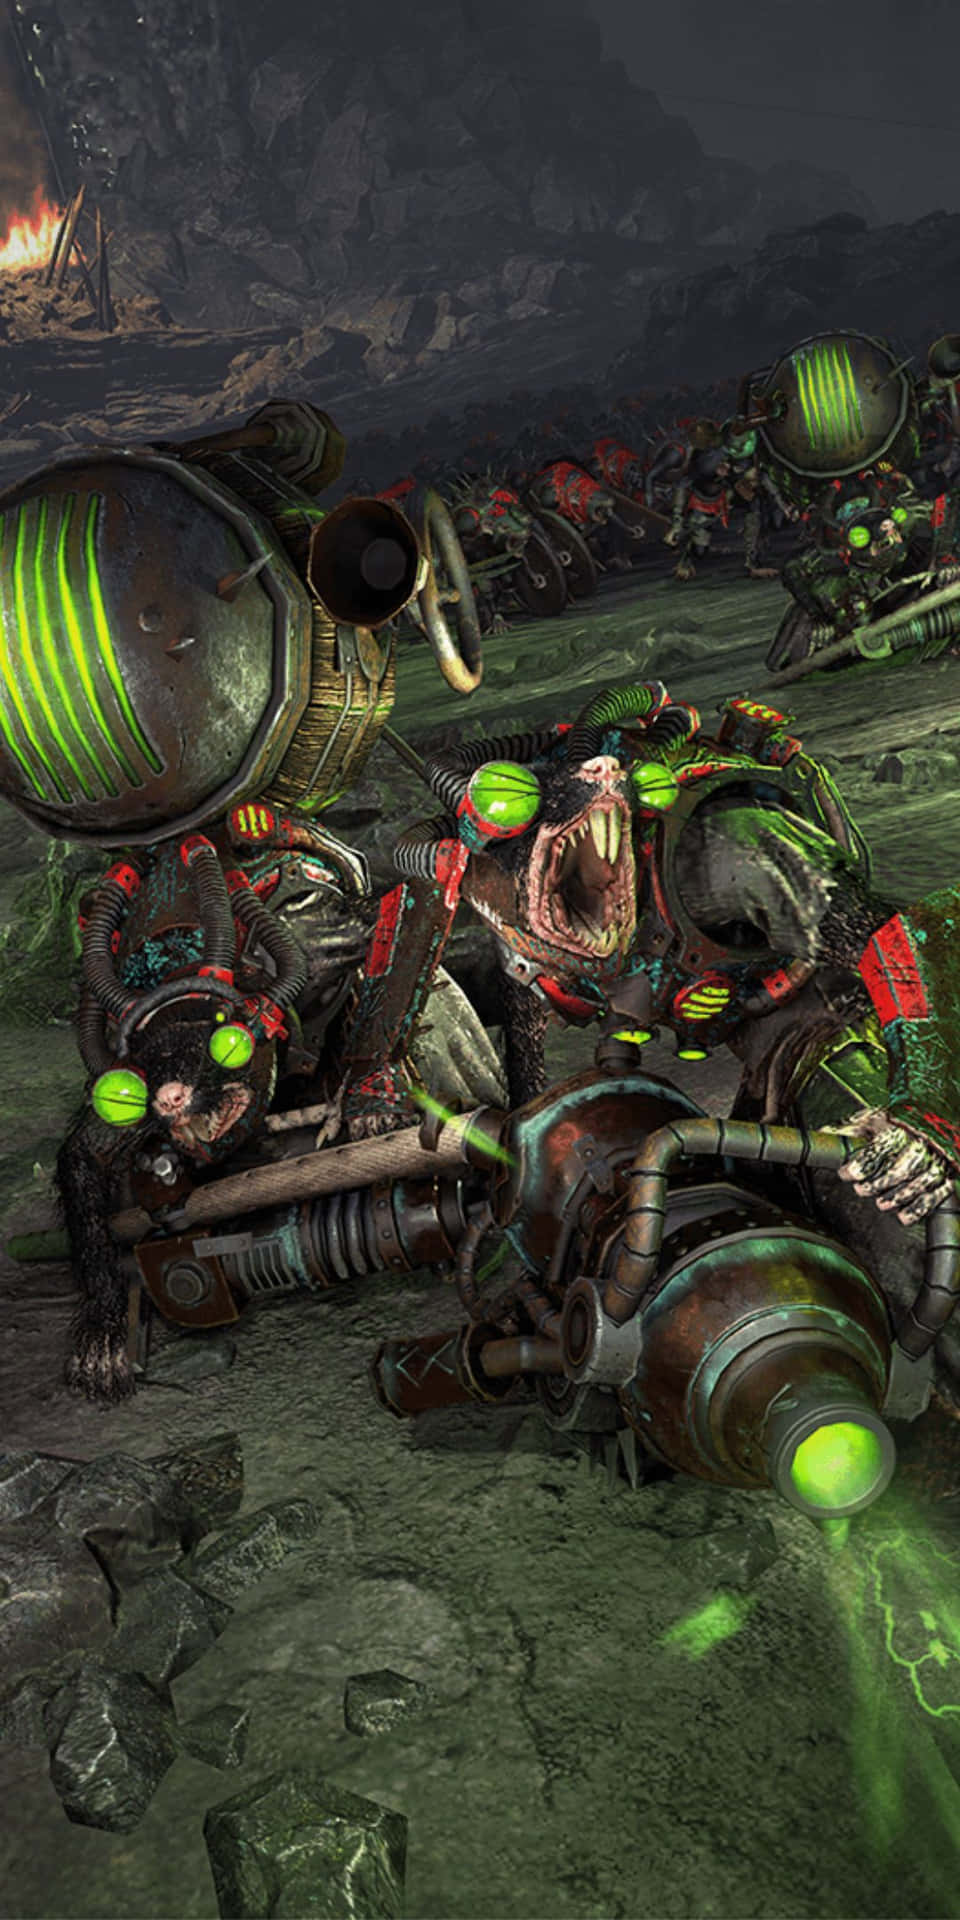 Pixel3 Bakgrundsbild Med Total War Warhammer Ii, I Grönt.